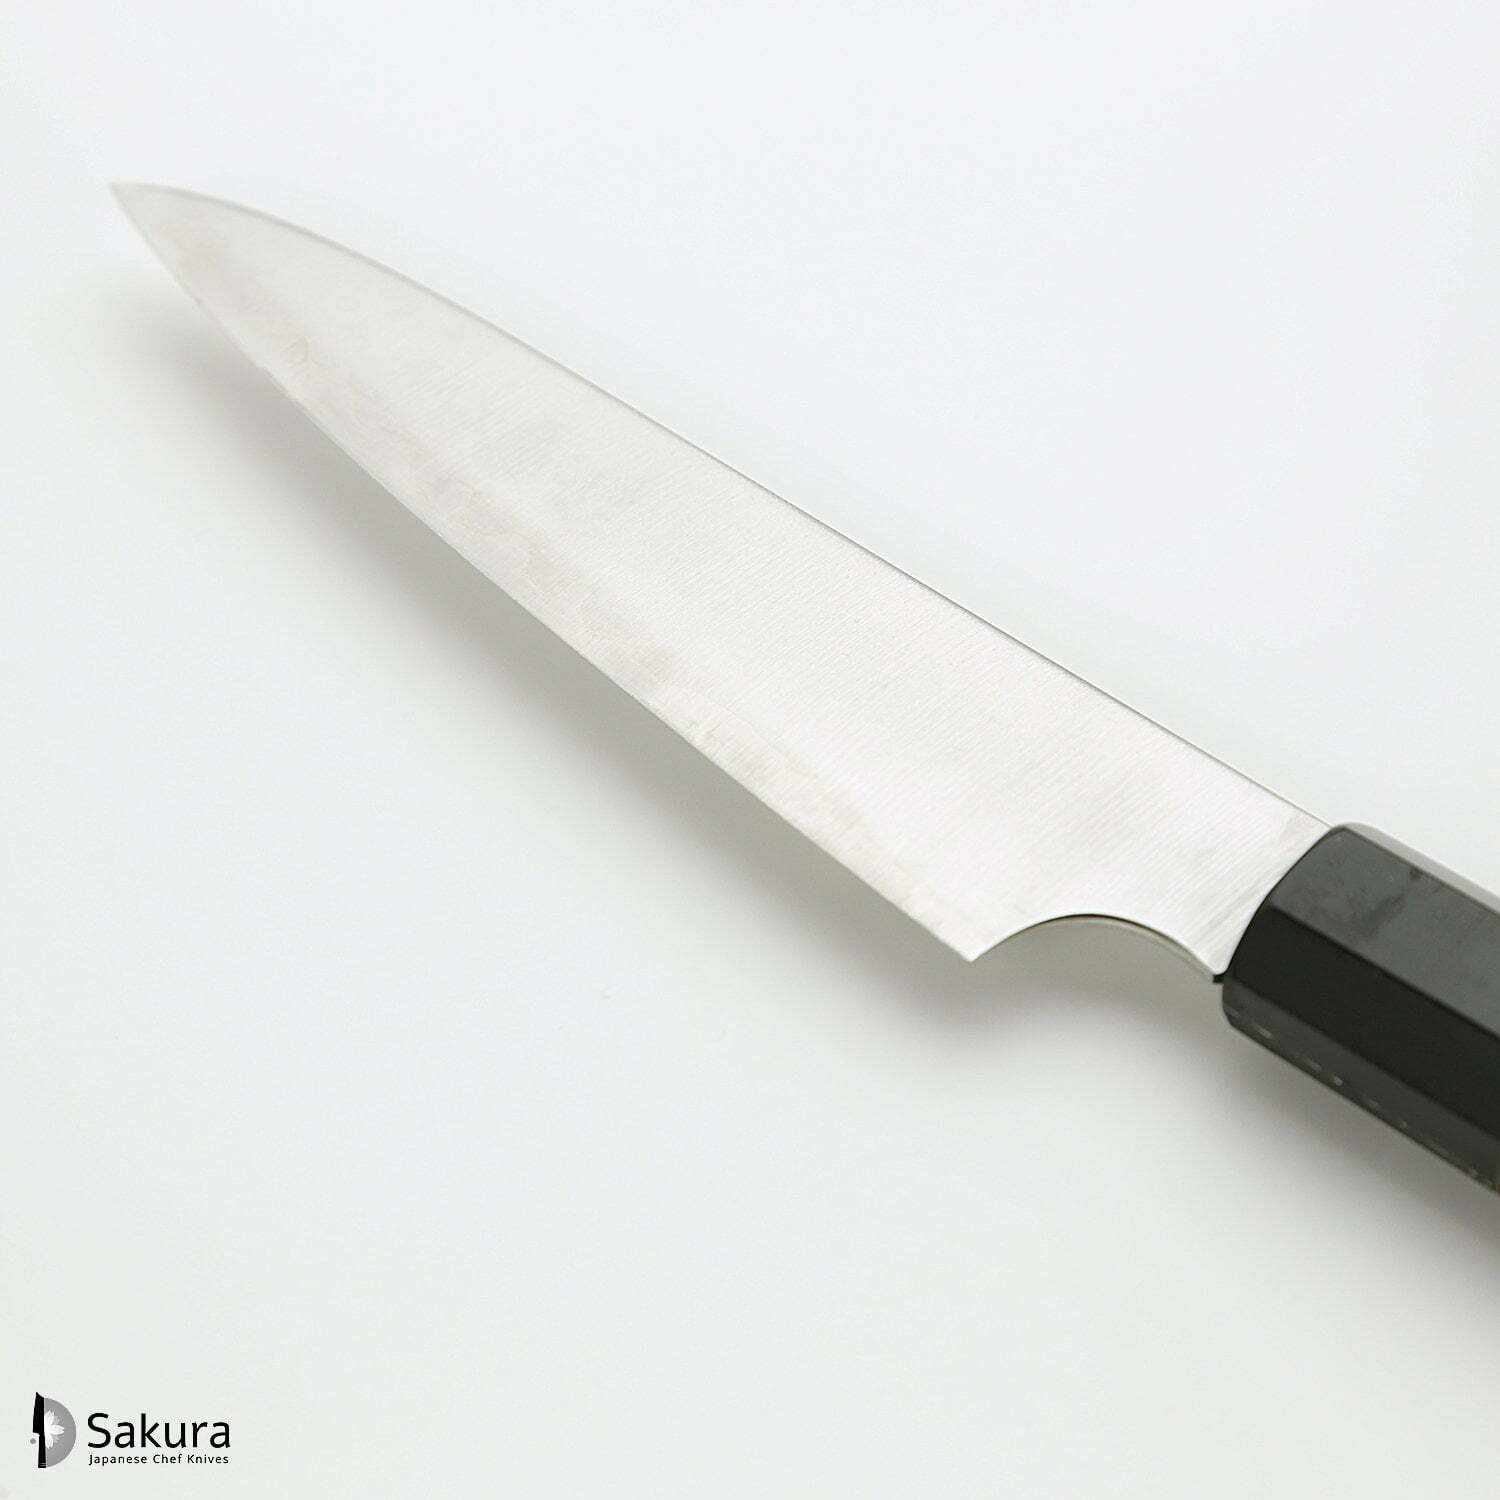 סכין עזר קטנה רב-תכליתית פֶּטִי 120מ״מ מחושלת בעבודת יד 3 שכבות: פלדת פחמן יפנית מתקדמת מסוג HAP40 עטופה פלדת אל-חלד גימור מט מלוטש האטסו קוקורו יפן